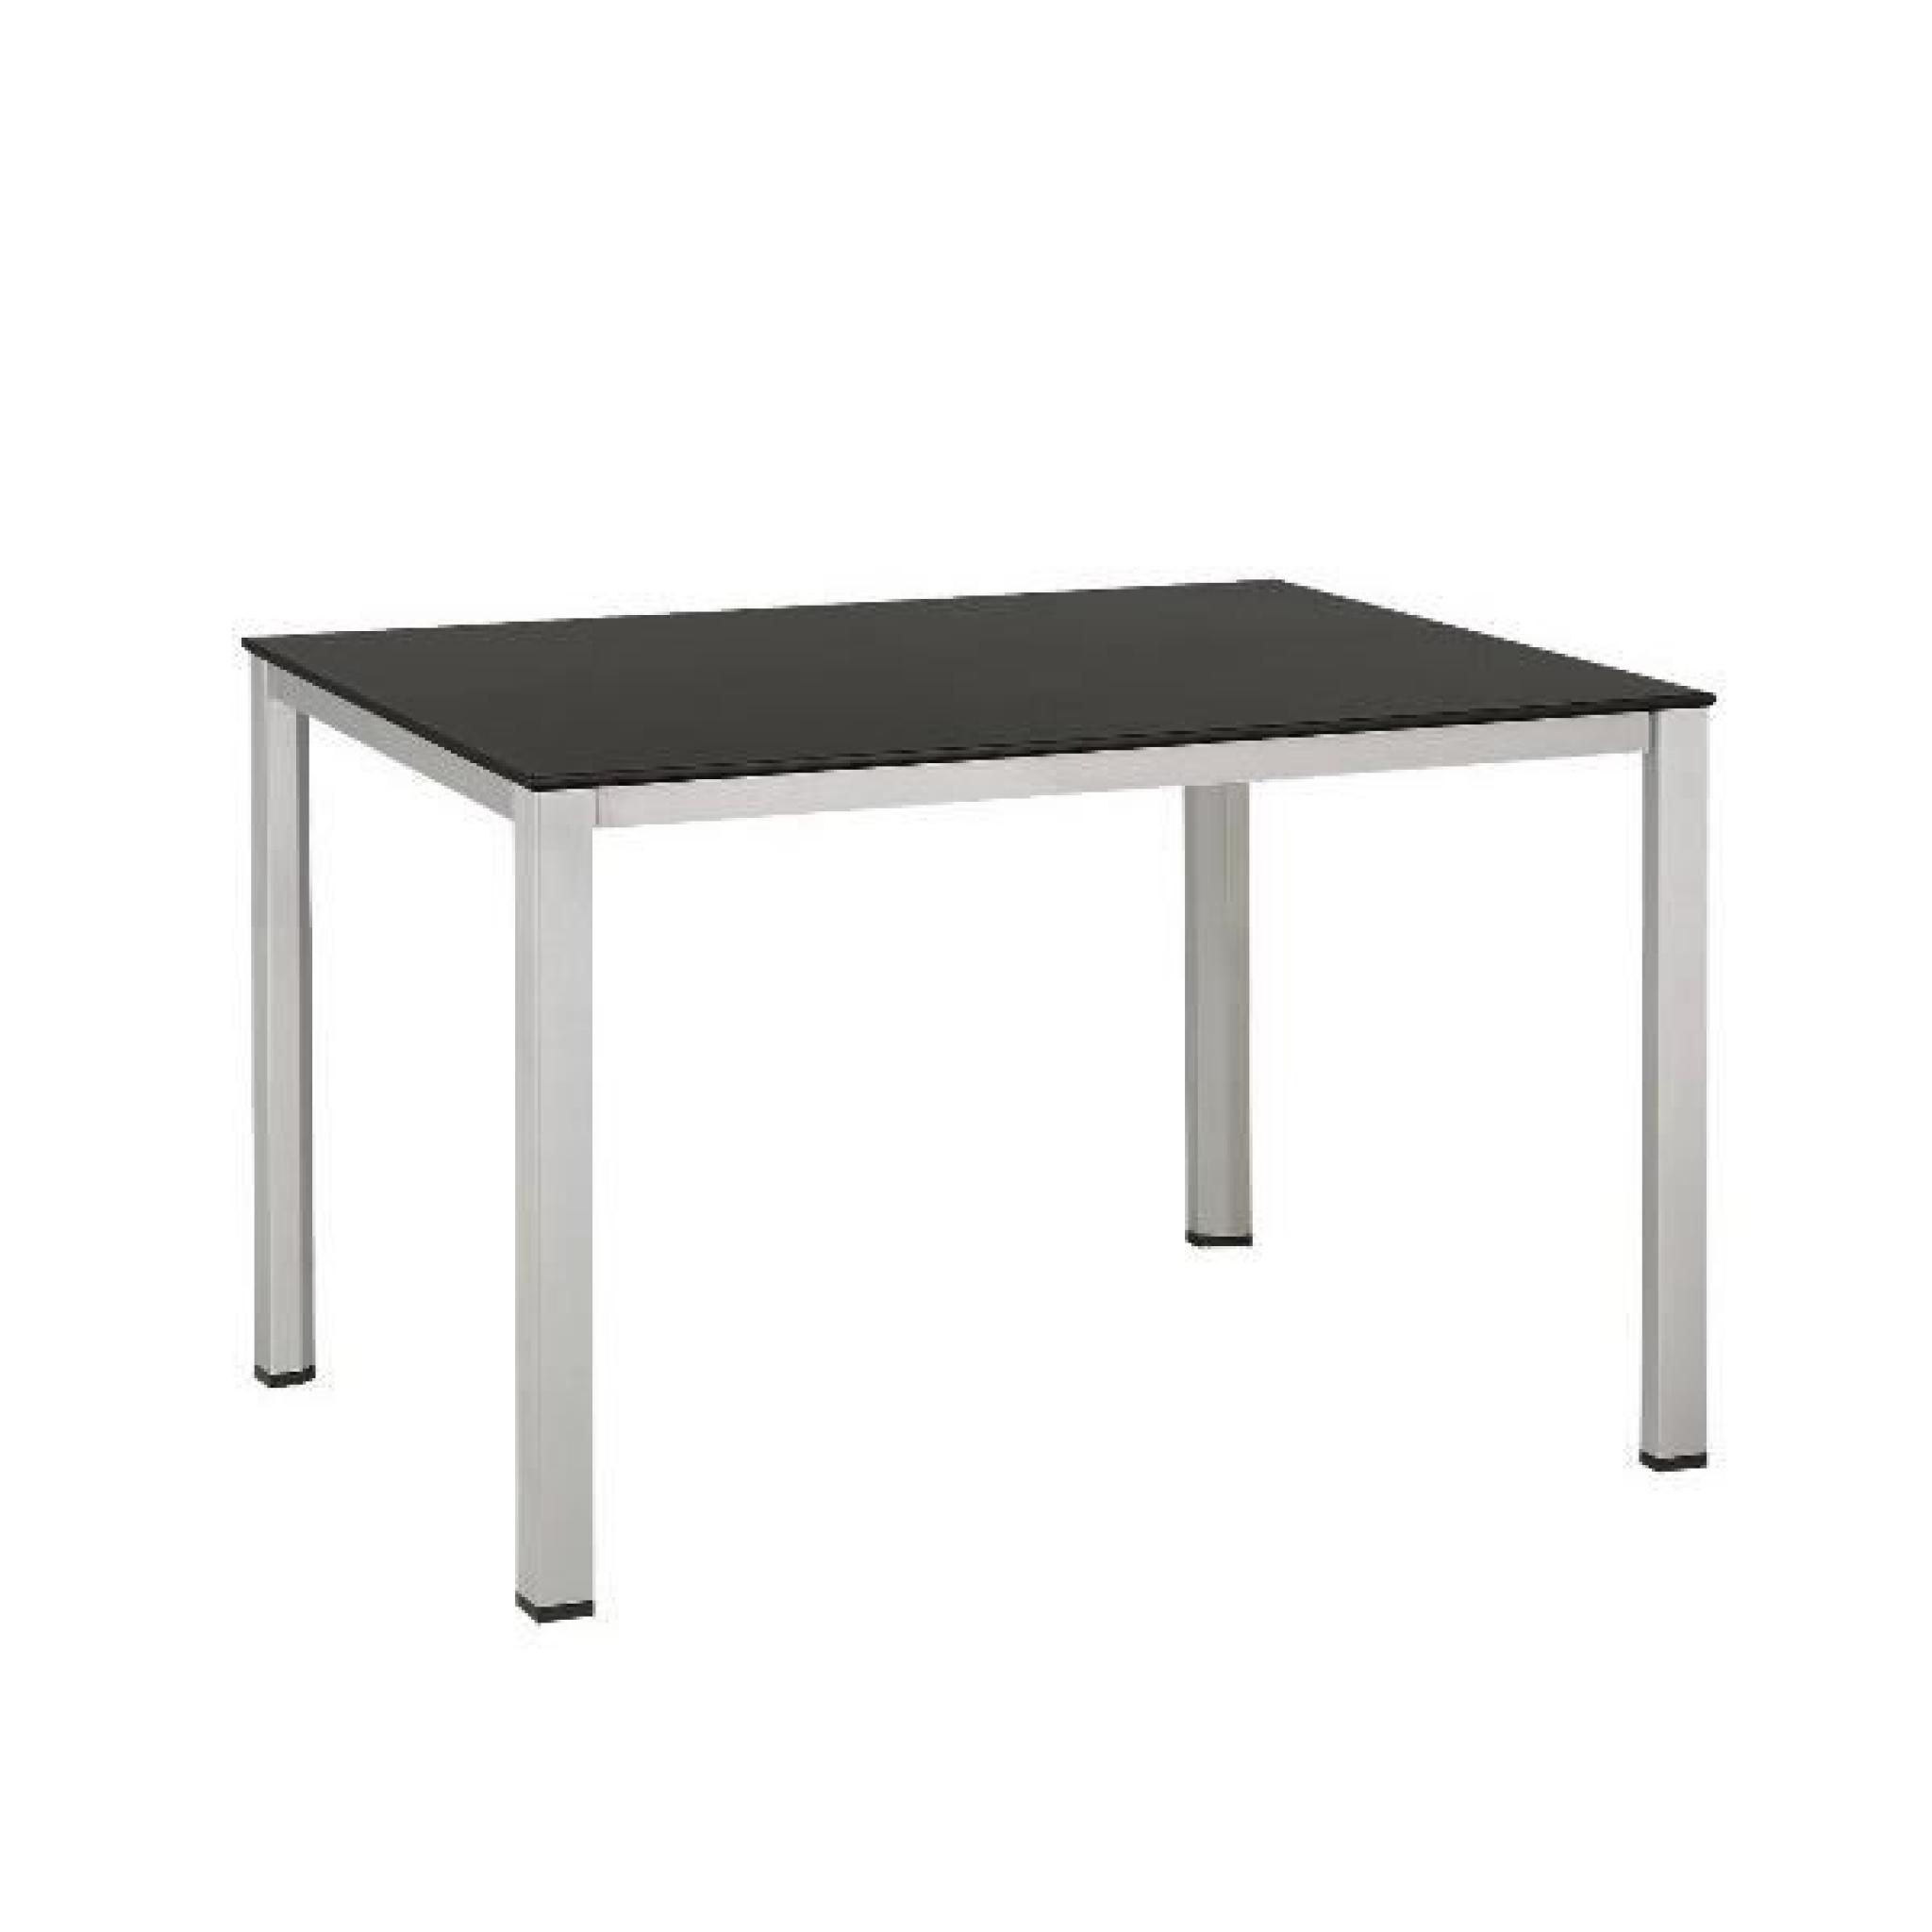 Table de jardin BALCON en aluminium et résine couleur anthracite - l 160 x L 70 x H 74 cm